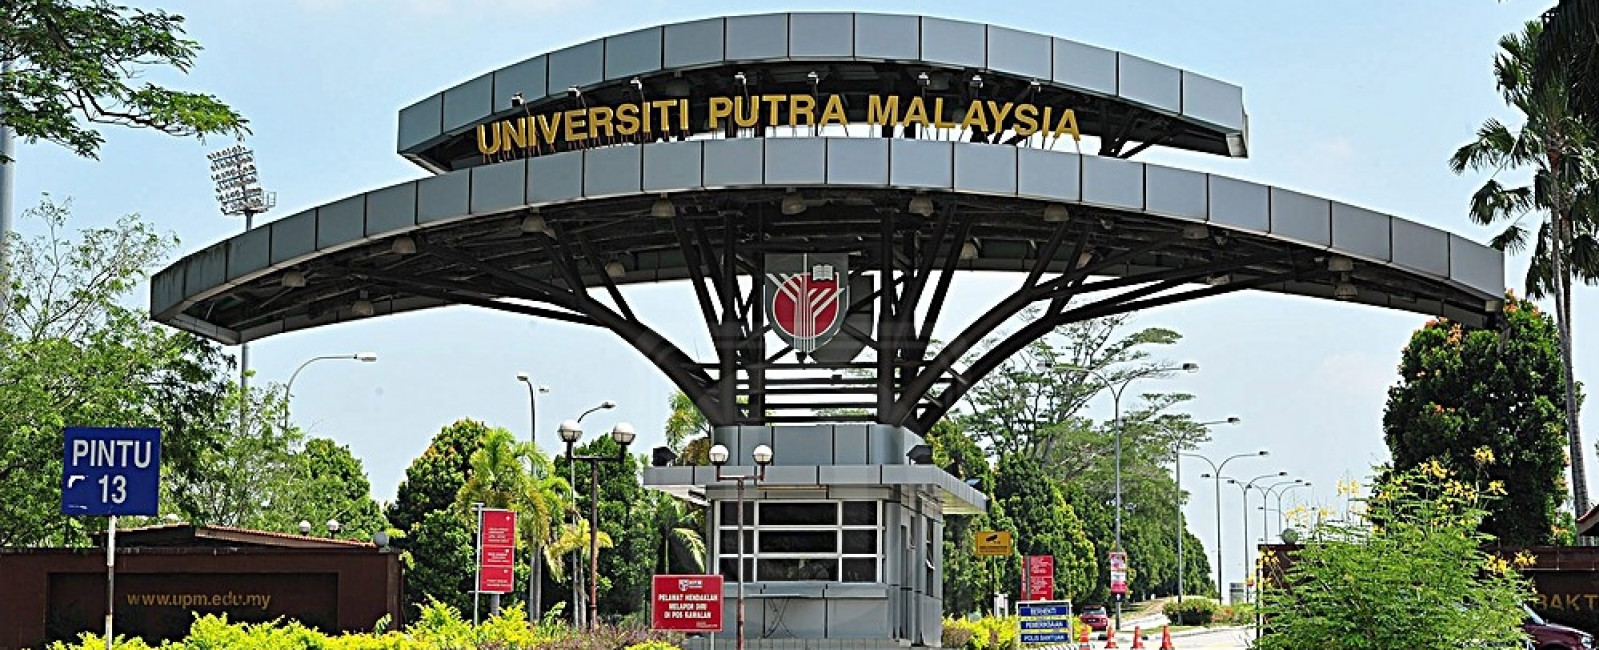 Малайзия университеты. Малайзия учебные заведения. Putra University. Серданг Малайзия.